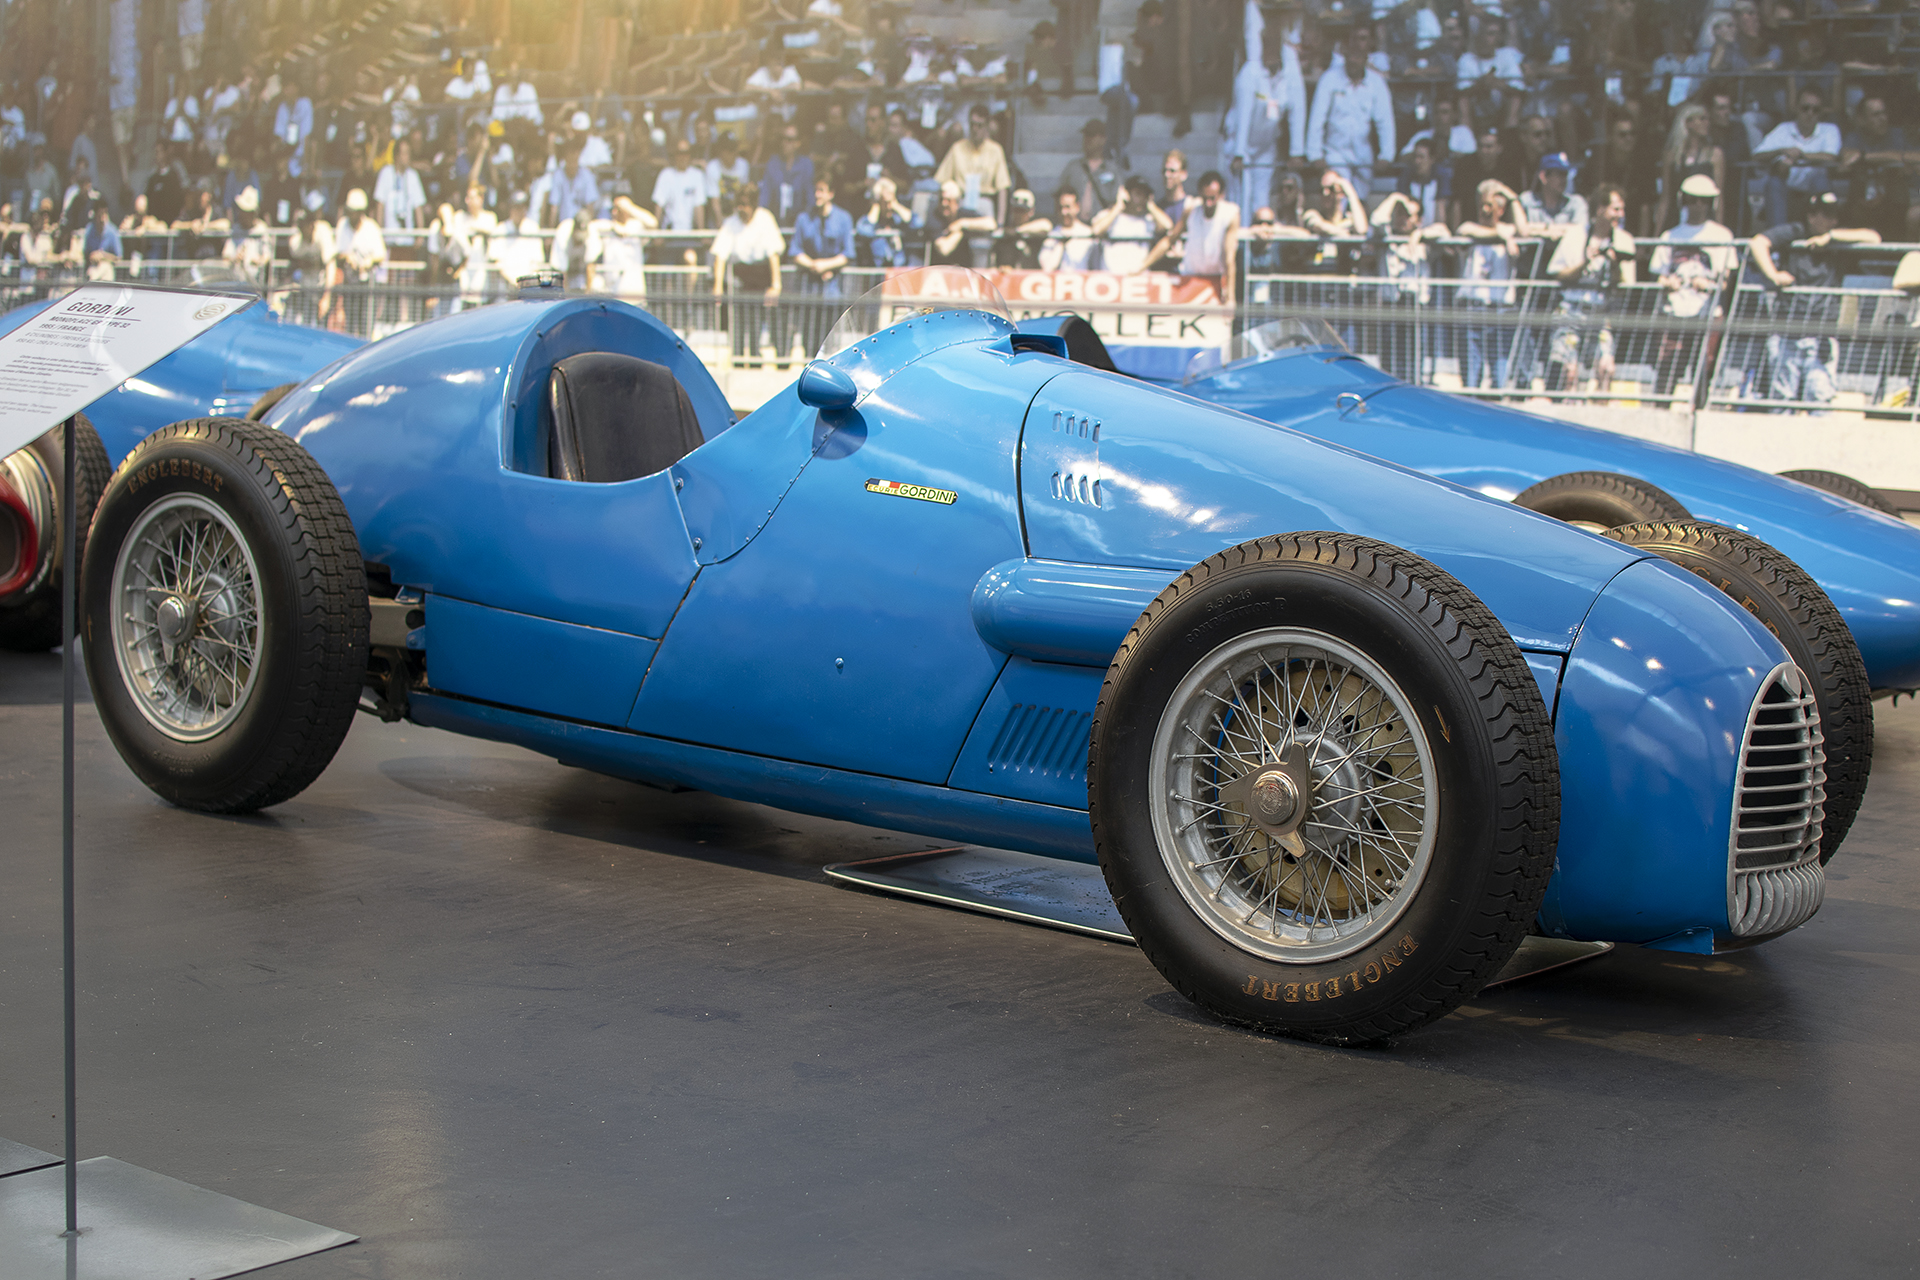   Gordini type 16 monoplace GP 1952 - Cité de l'automobile, Collection Schlumpf, Mulhouse, 2020